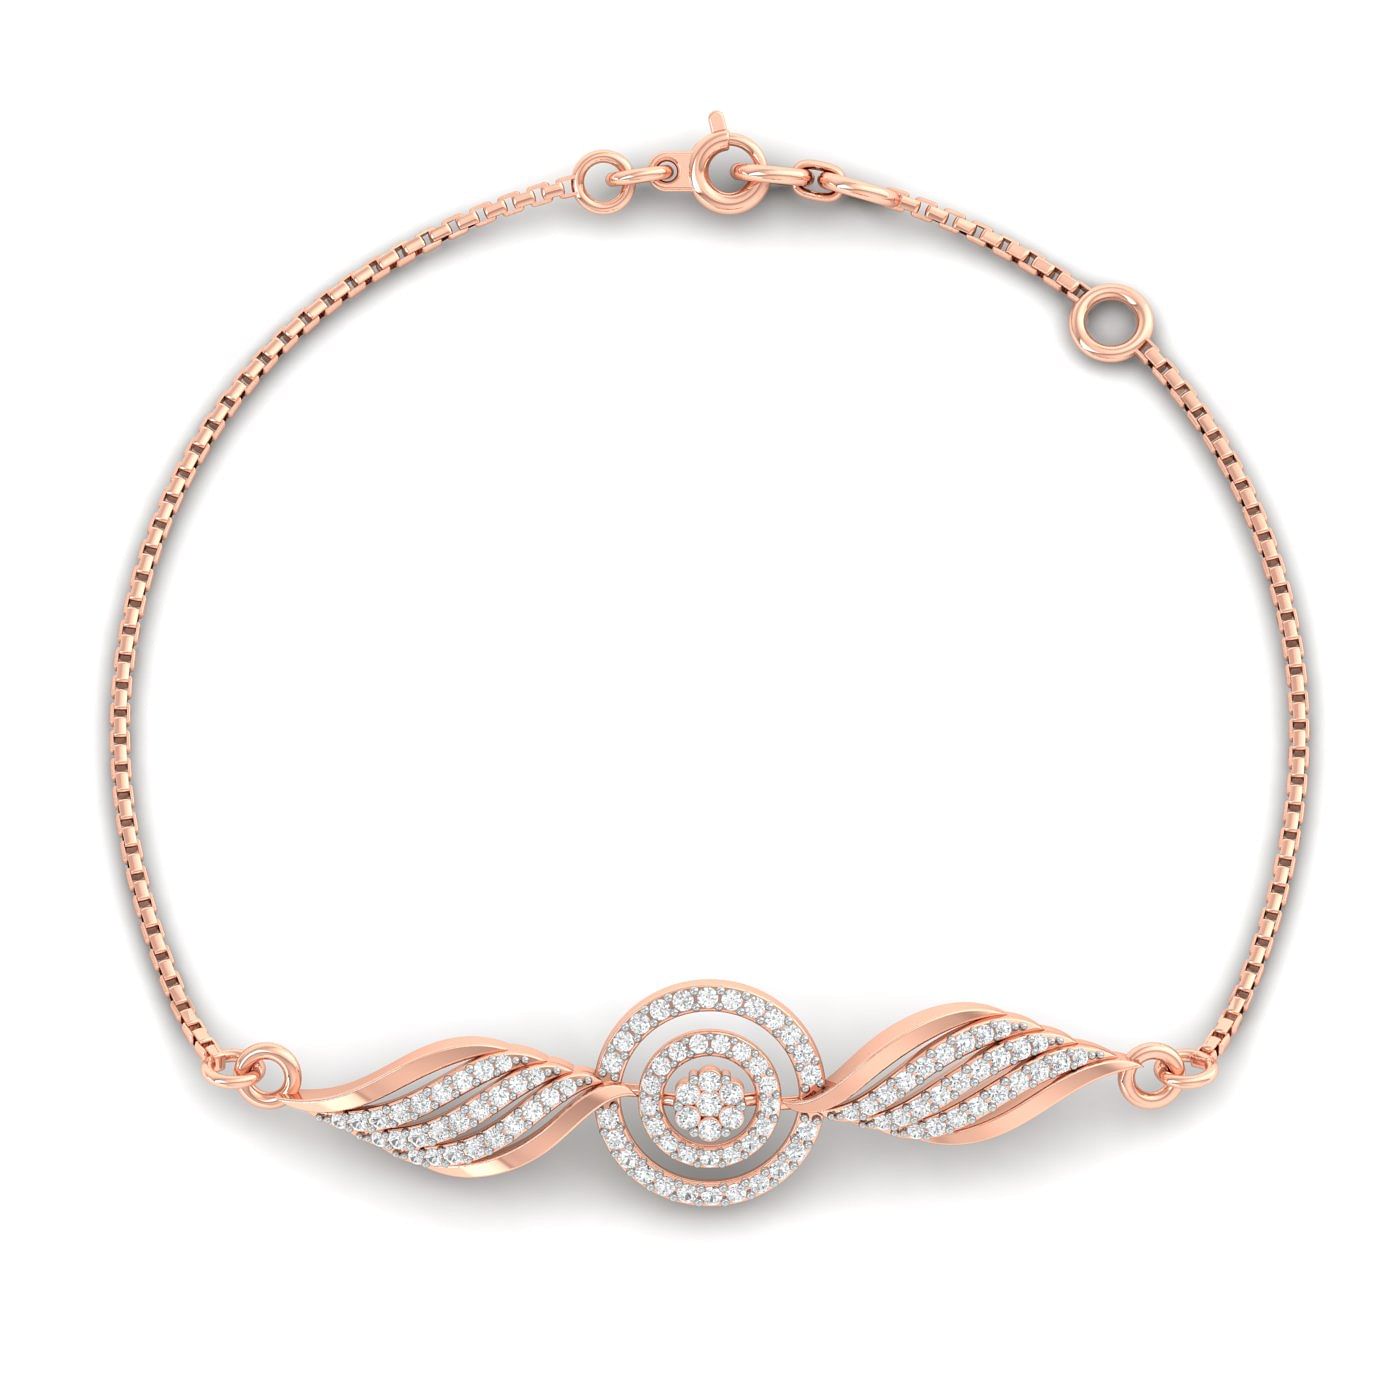 Rose Gold Sparkling Diamond Bracelet For Engagement Gift